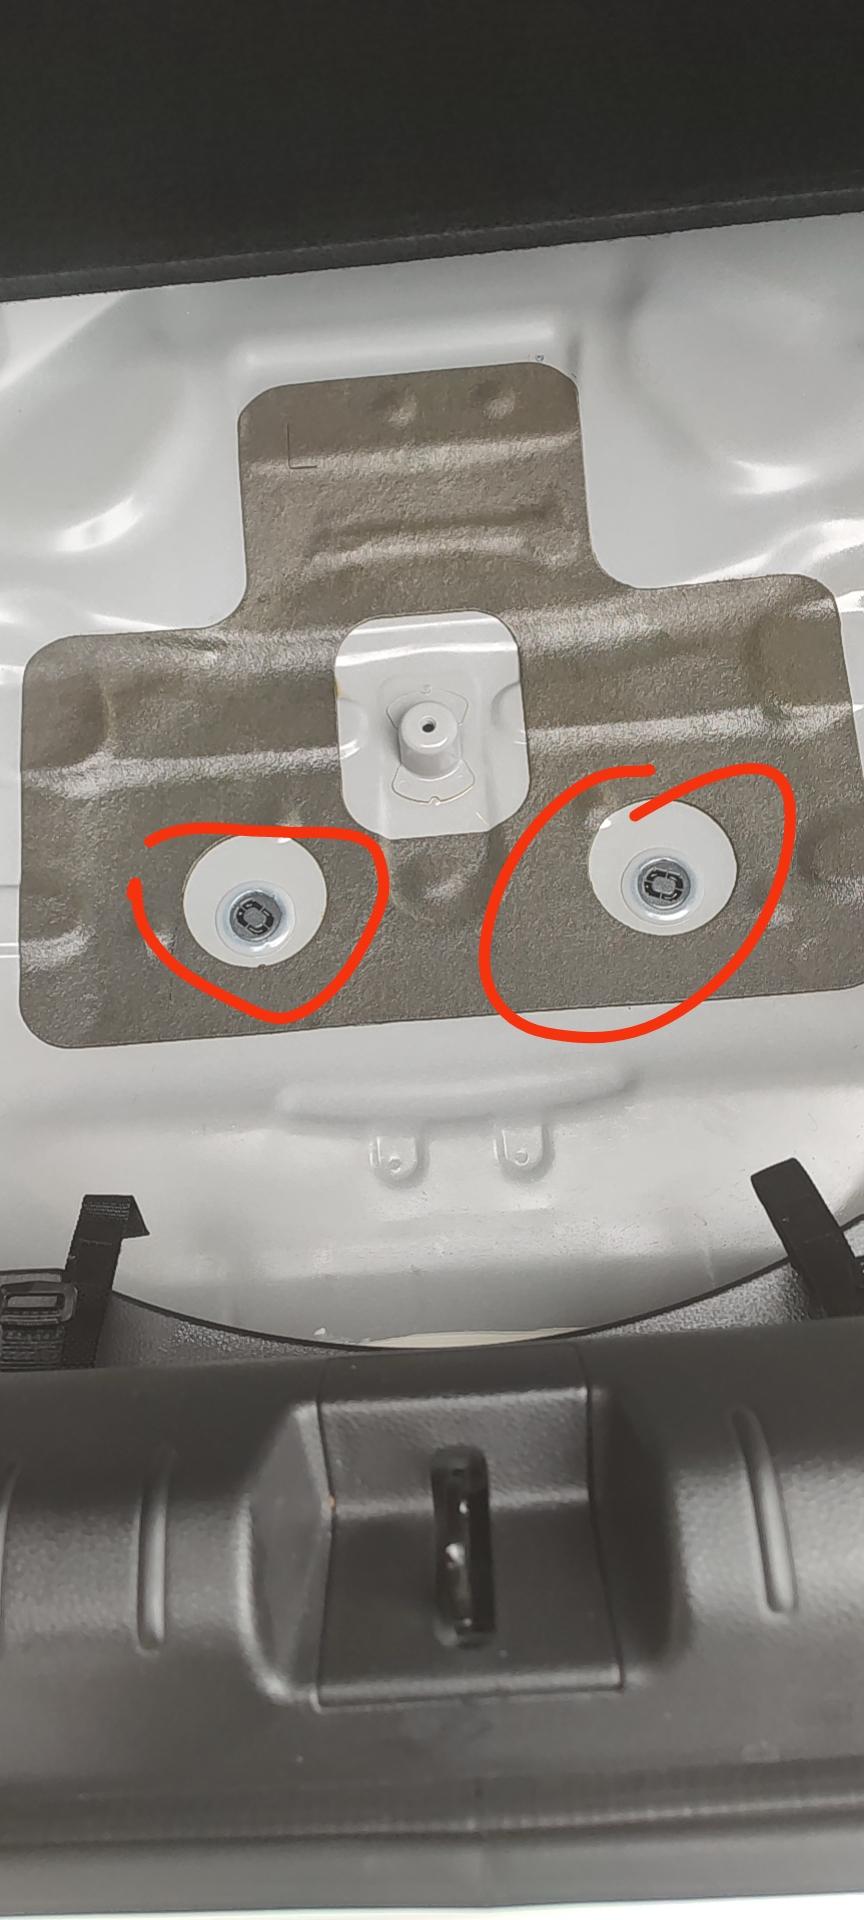 思域后备箱底下这两个小孔是用来干嘛的？如果是漏水的话为什么我洒在上面的菜油漏不下去呢